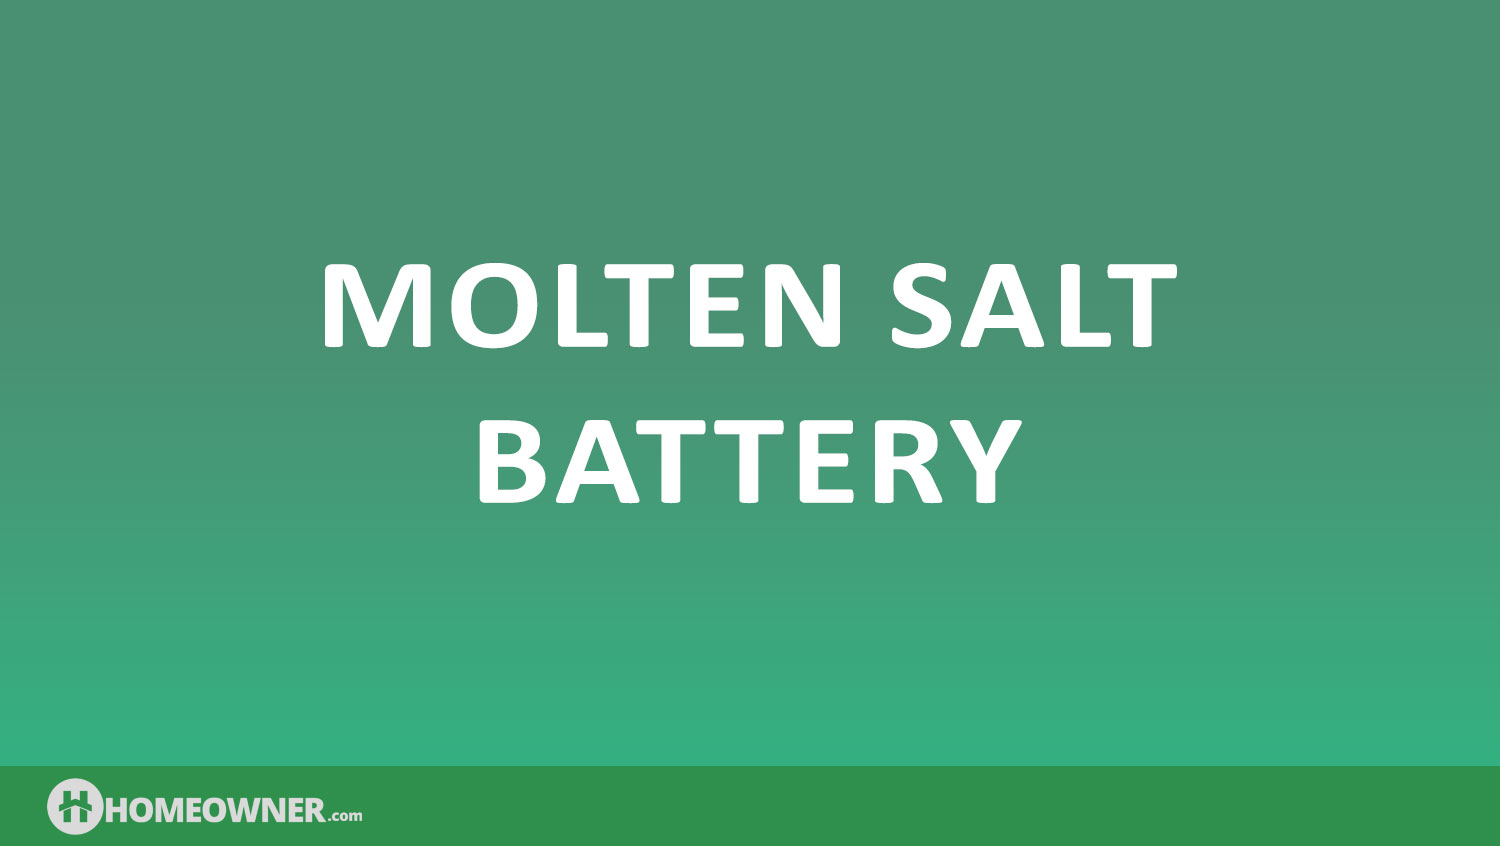 Molten Salt Battery